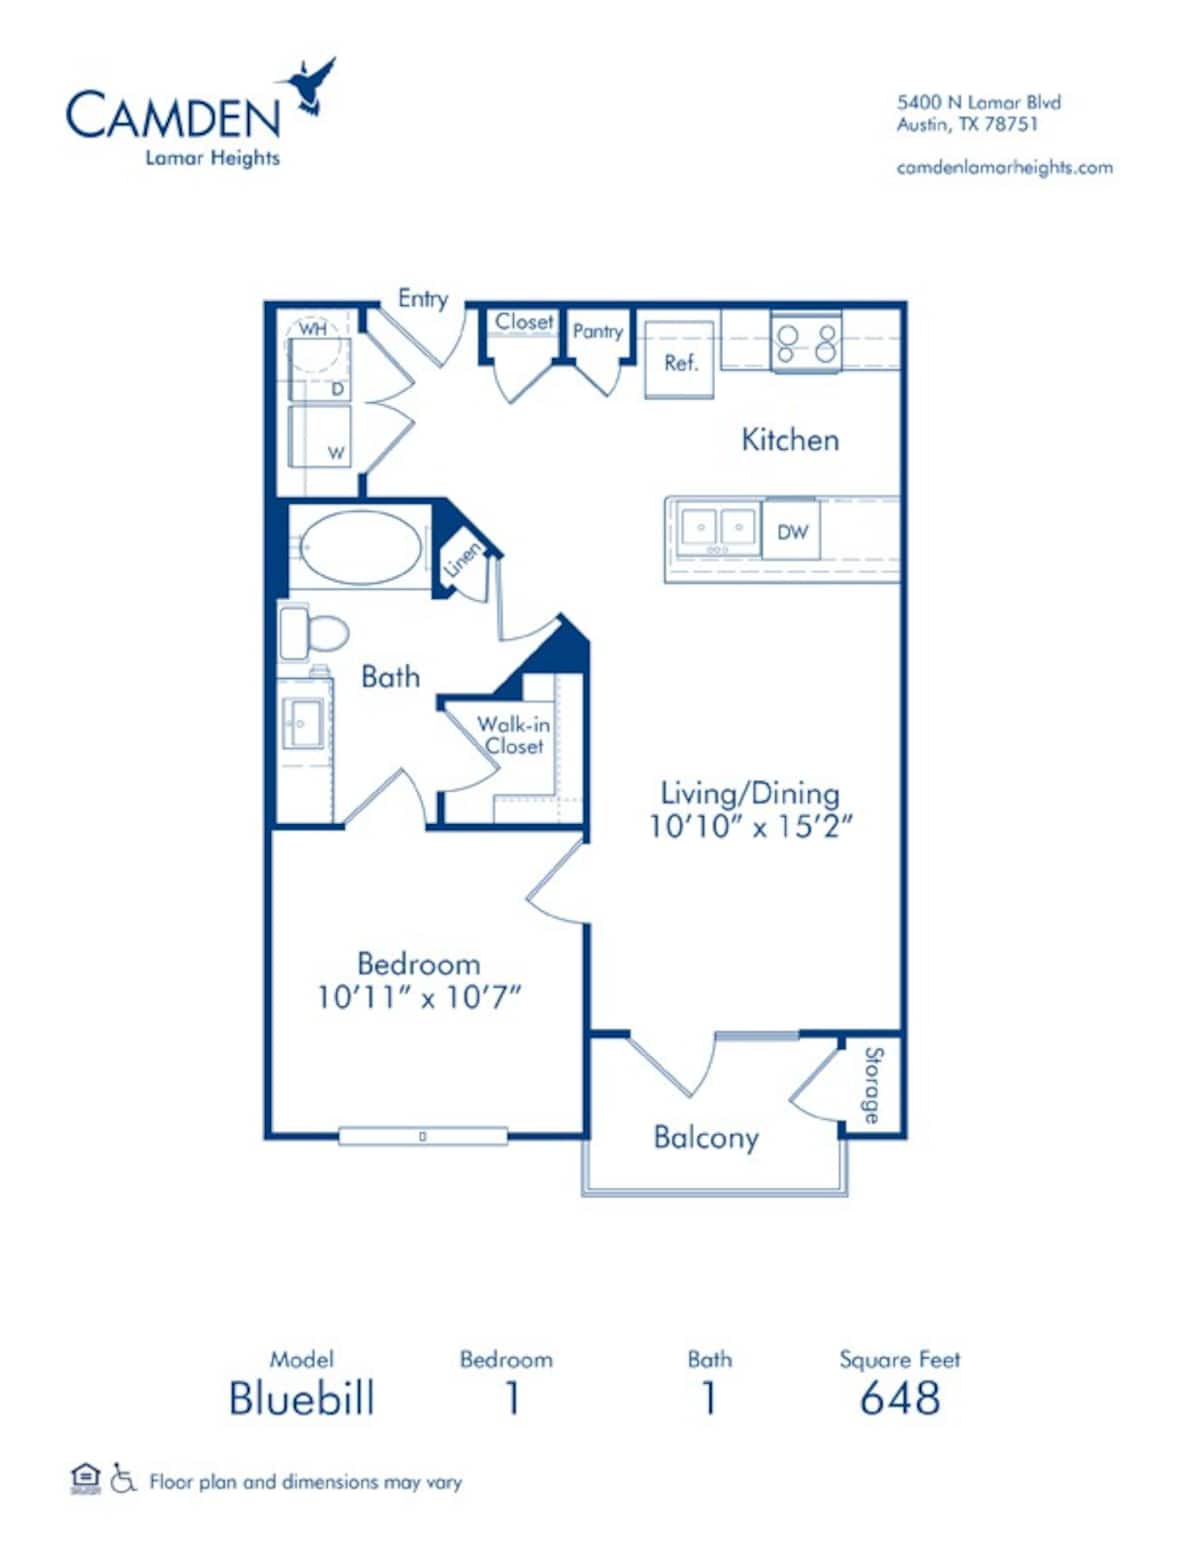 Floorplan diagram for Bluebill, showing 1 bedroom